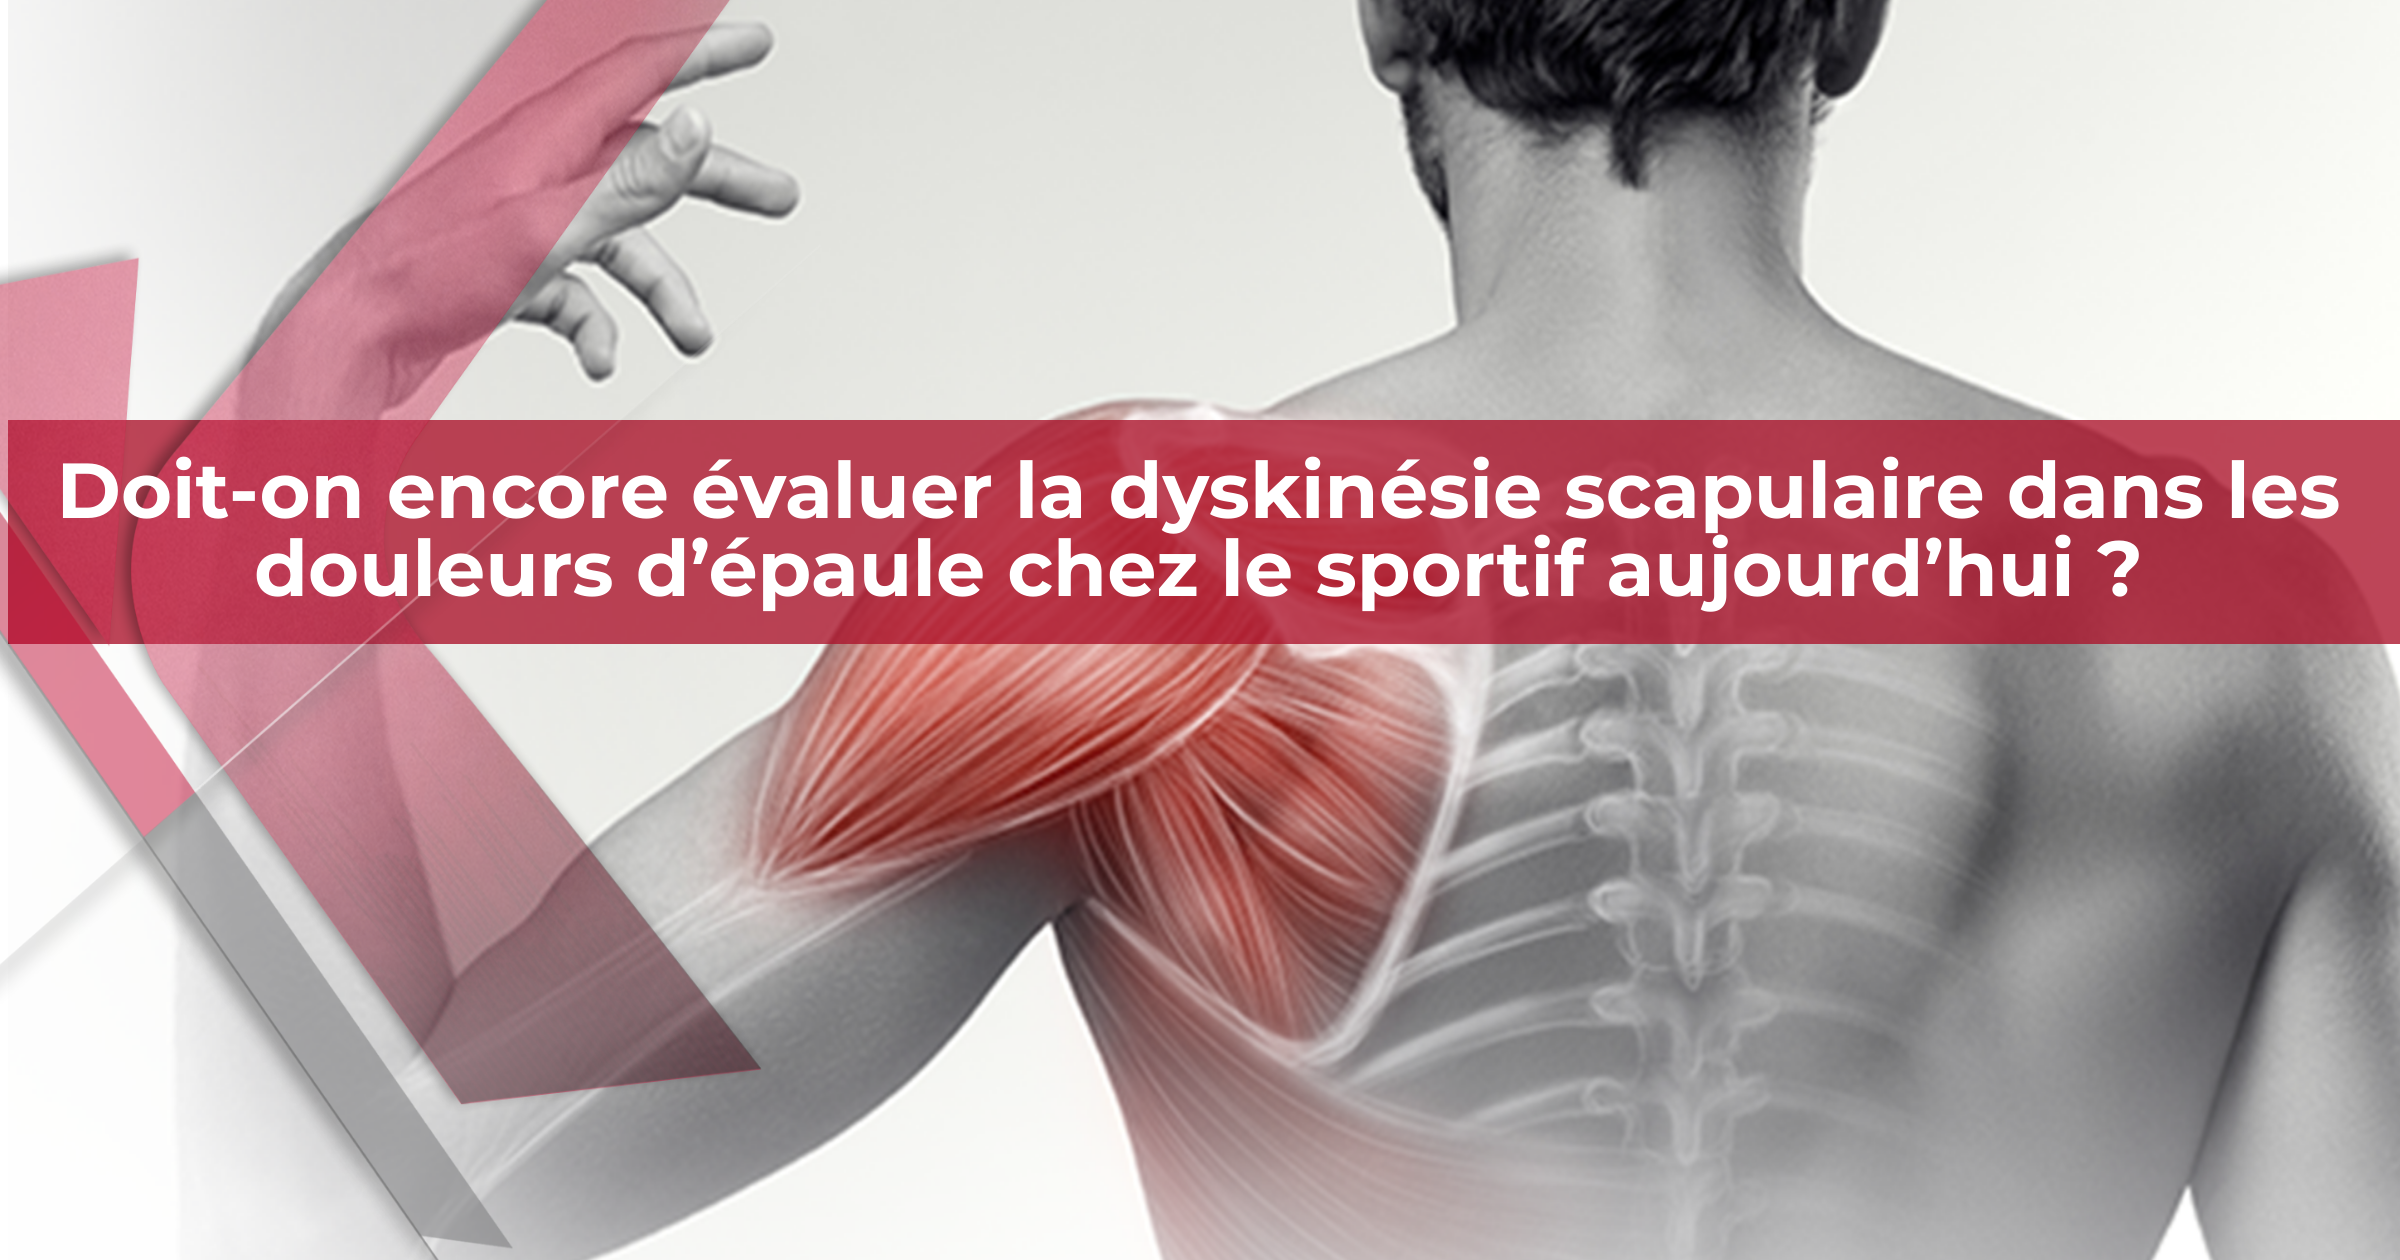   Doit-on encore évaluer la dyskinésie scapulaire dans les douleurs d’épaule chez le sportif aujourd’hui ?    